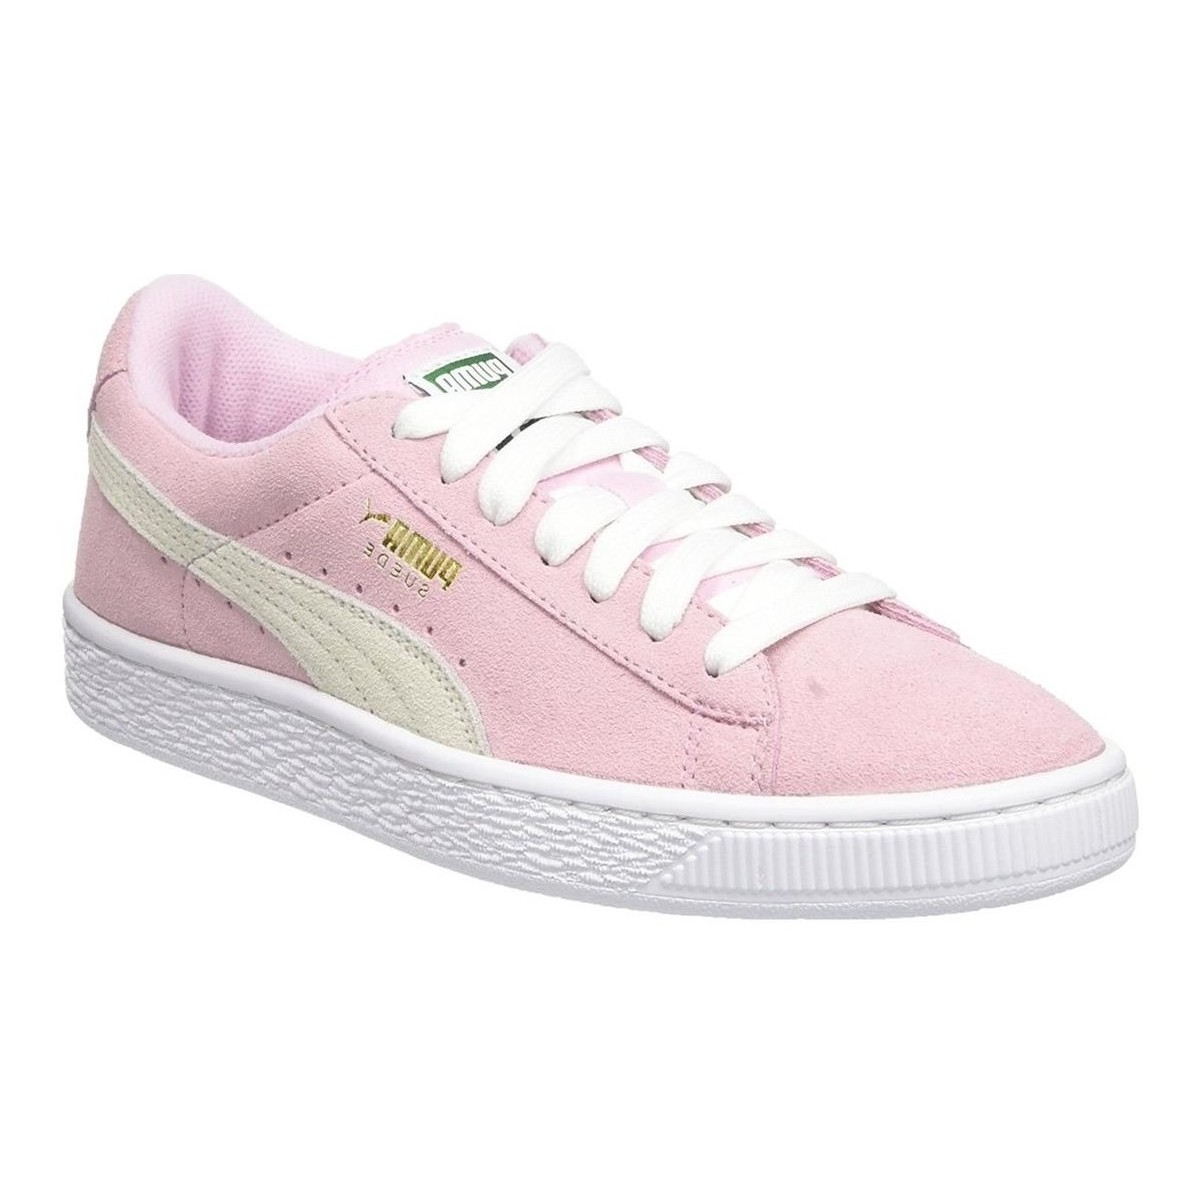 Παπούτσια Γυναίκα Sneakers Puma 352634 Ροζ